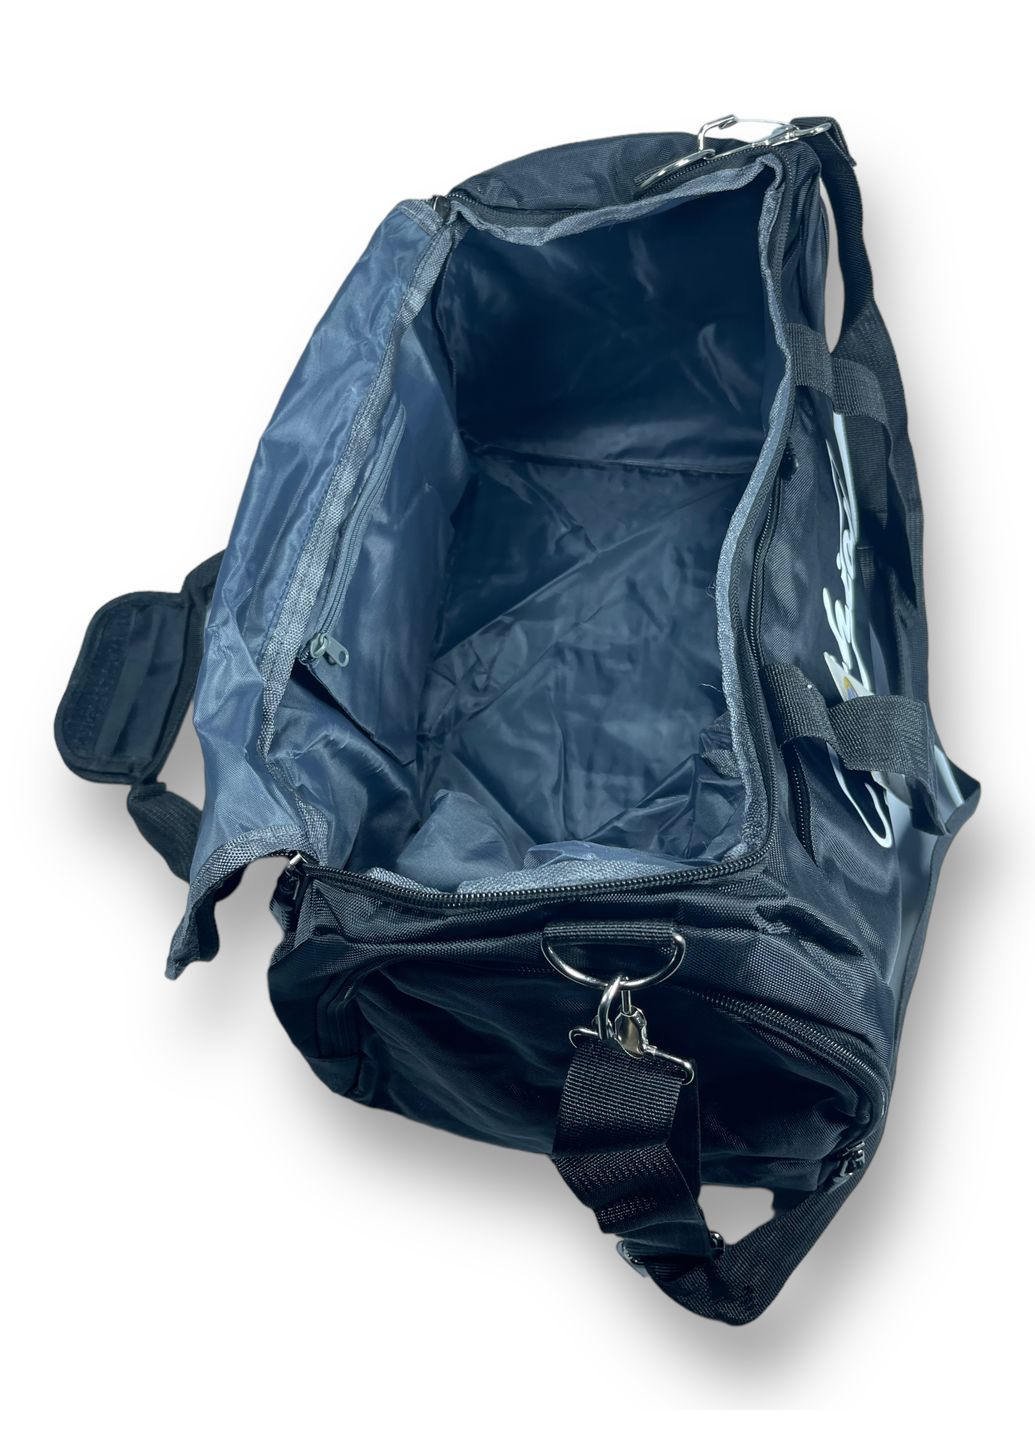 Дорожня сумка 40 л 1 відділення 3 додаткових відділення розмір: 30*50*24 см сіра Fashion (267495601)